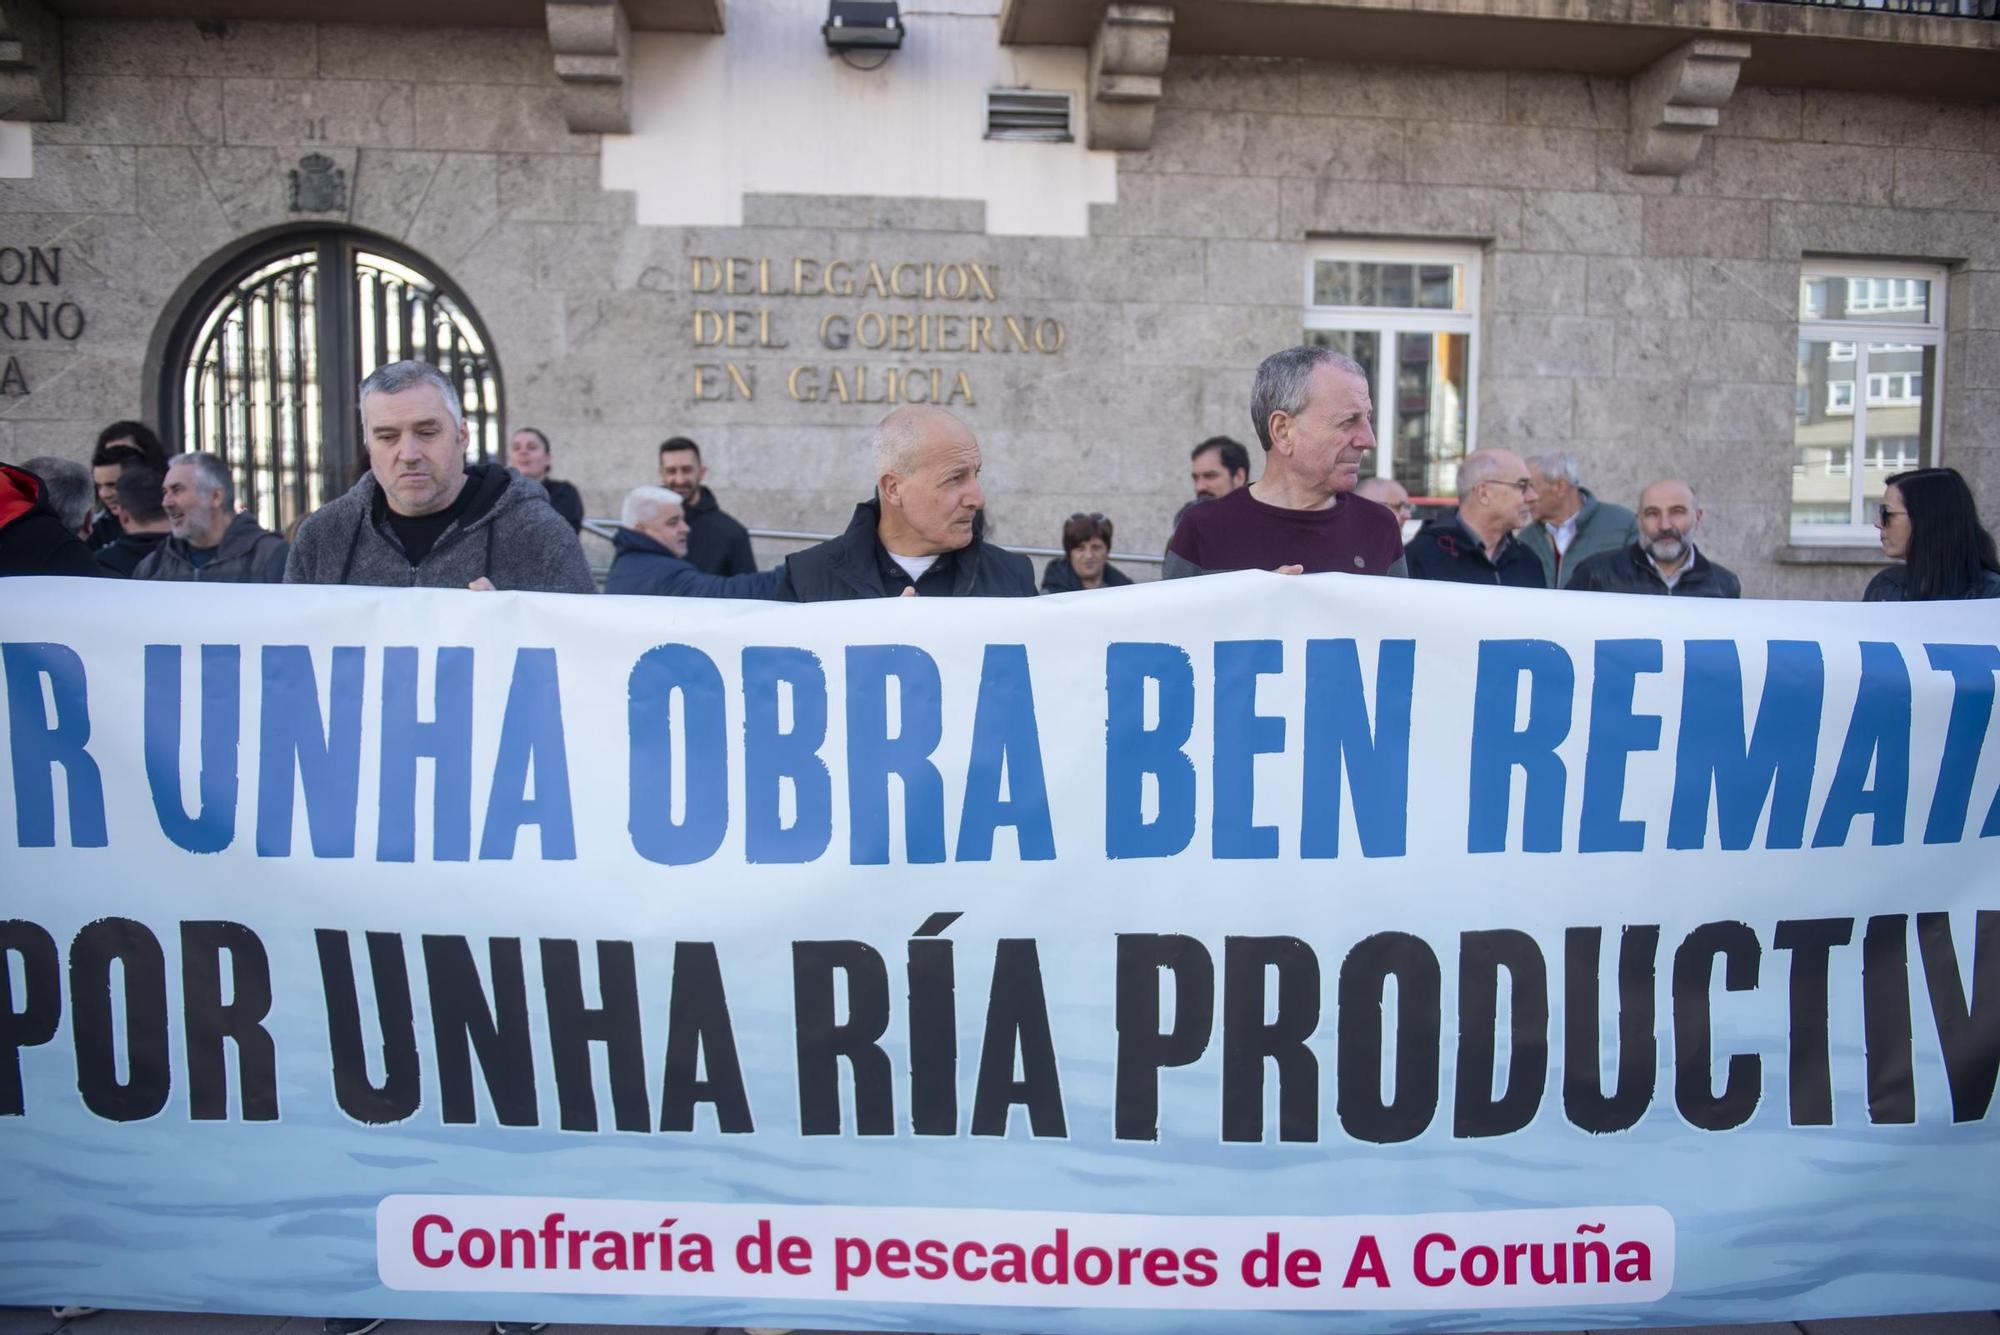 Los mariscadores de la ría de O Burgo piden compensaciones económicas: "No nos pueden dejar tirados"